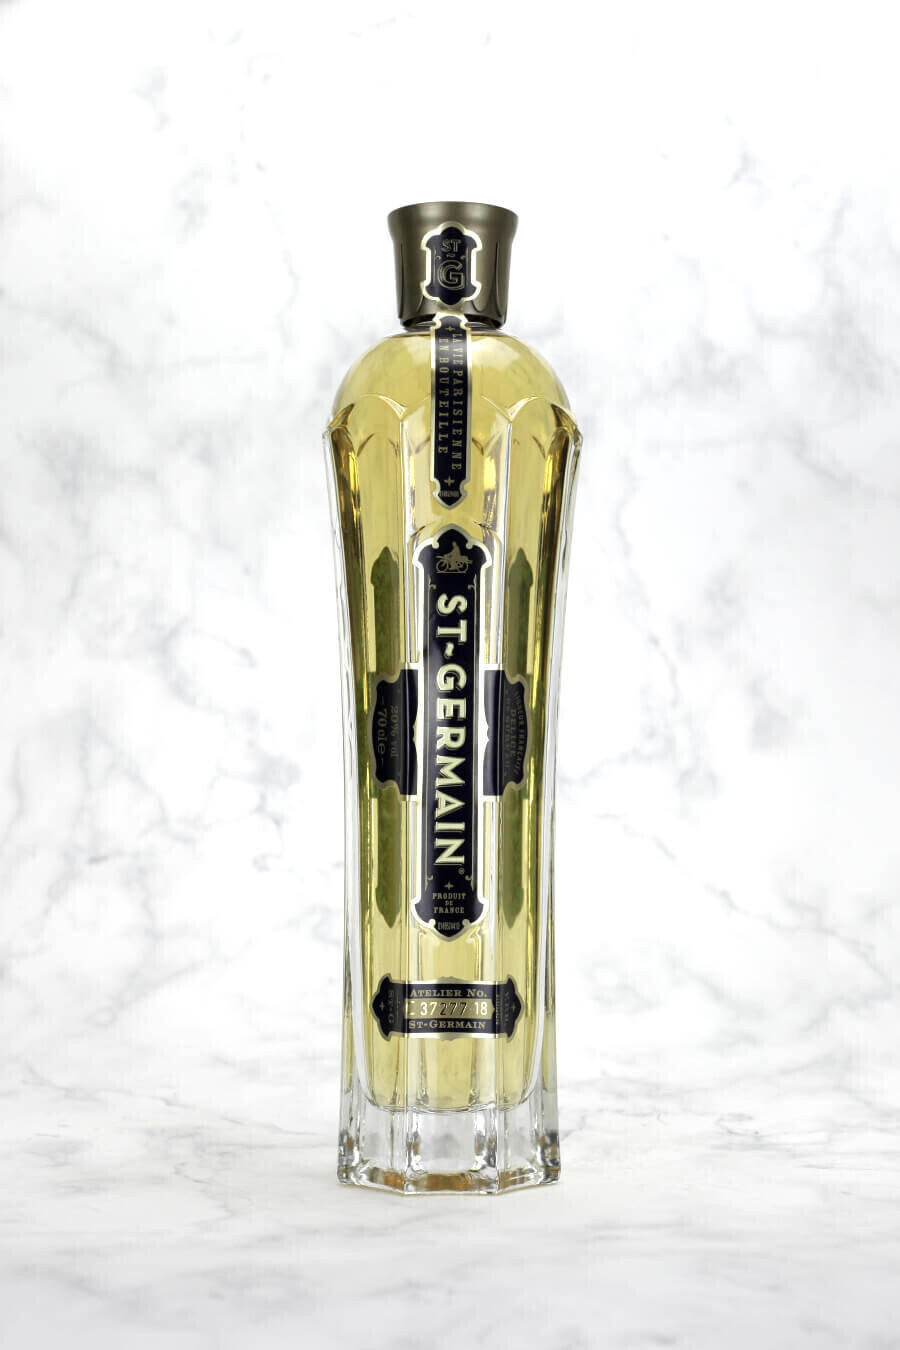 St-Germain Elderflower Liqueur 0.7l 20%